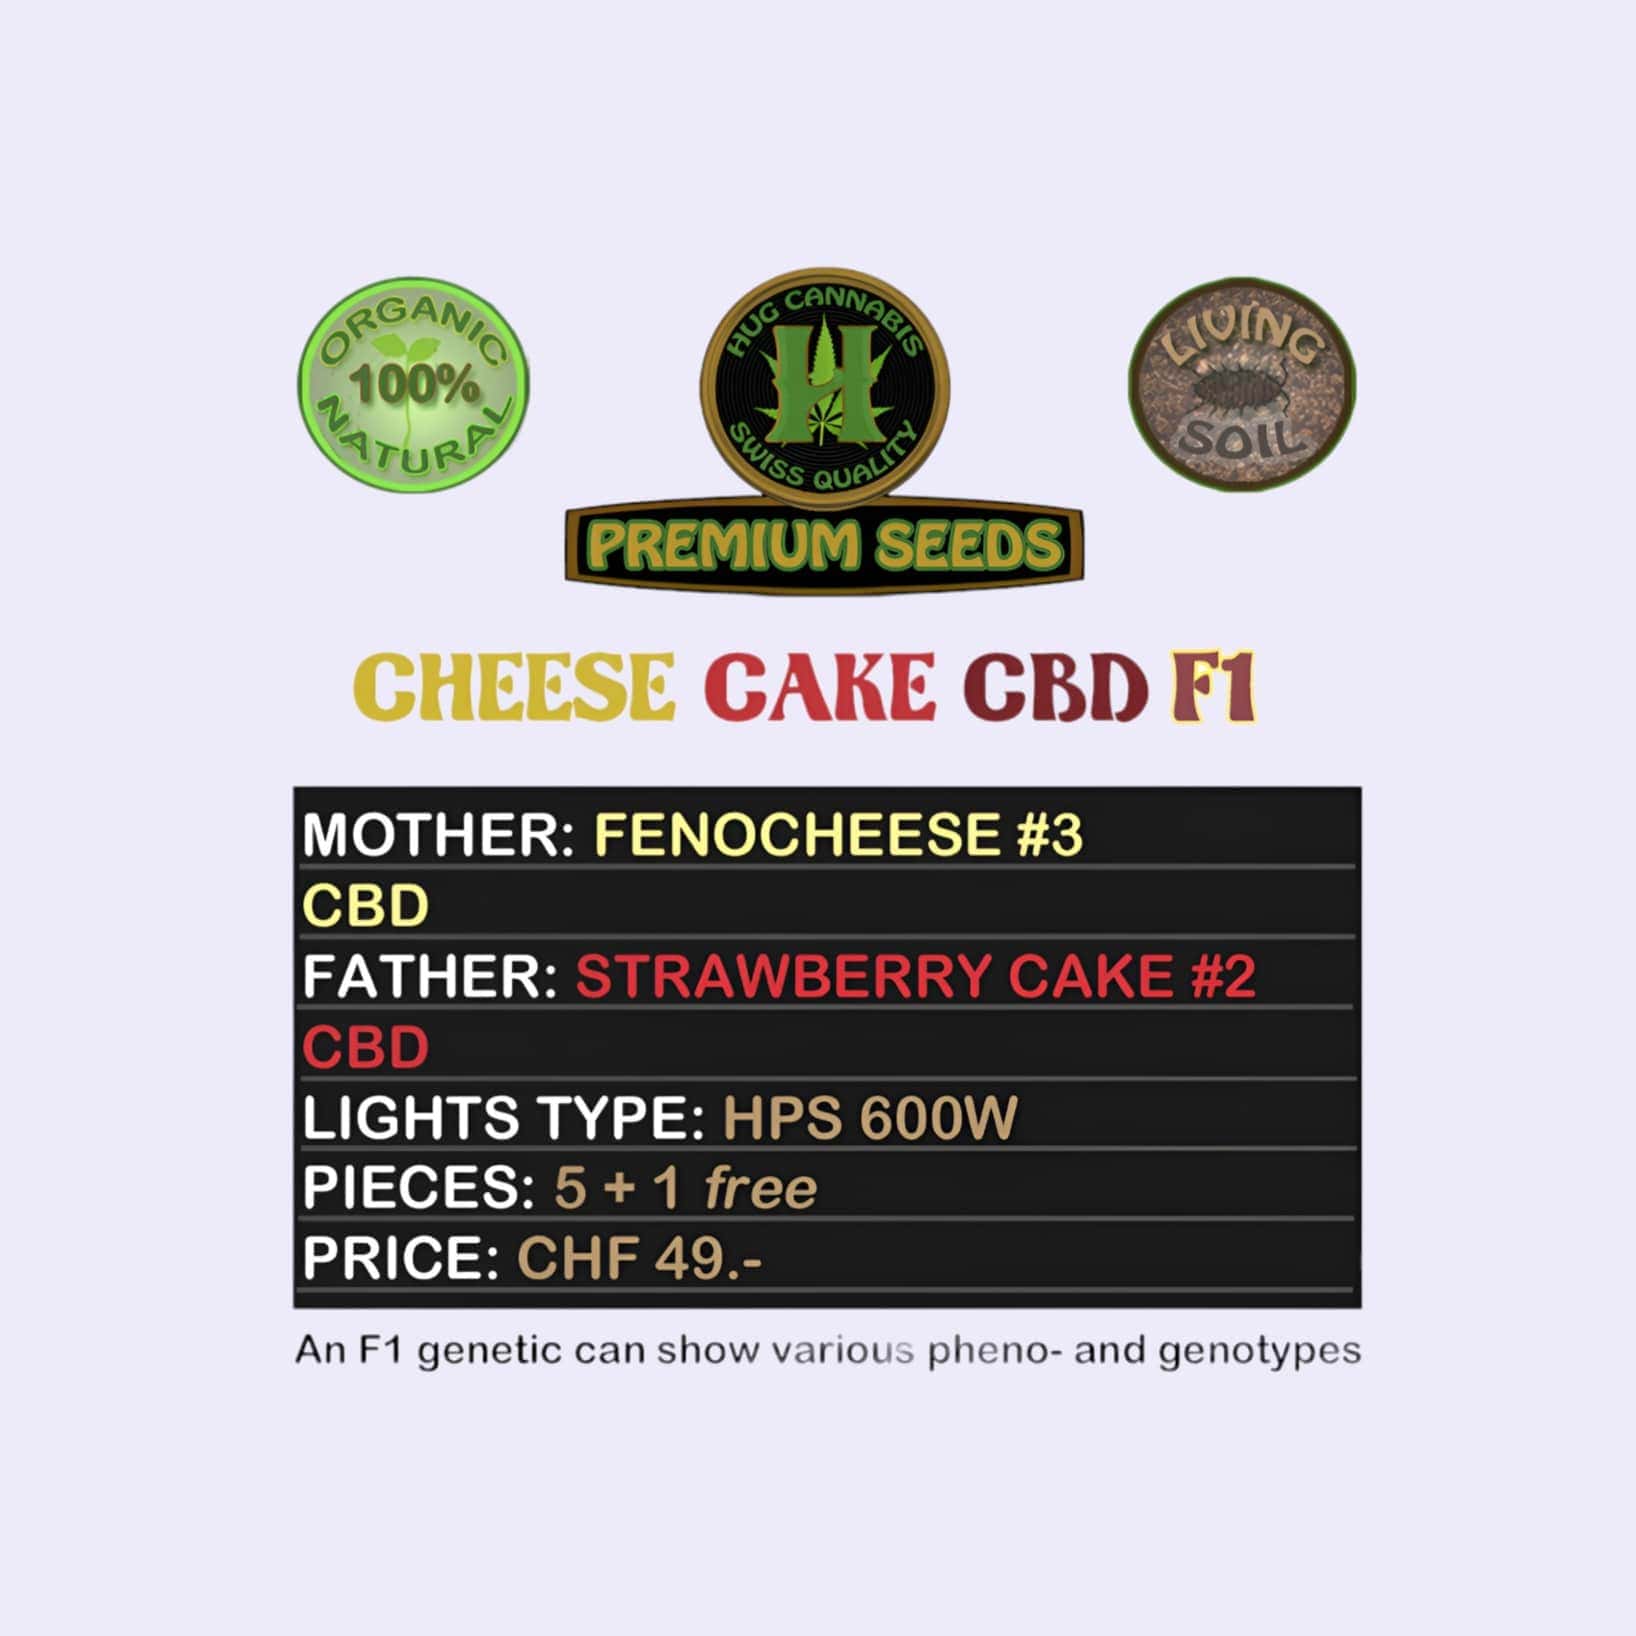 Dieses Bild zeigt die CBD Hanfsamen Cheese Cake CBD F1 5 Seeds + 1 Free von der Firma Hug Cannabis